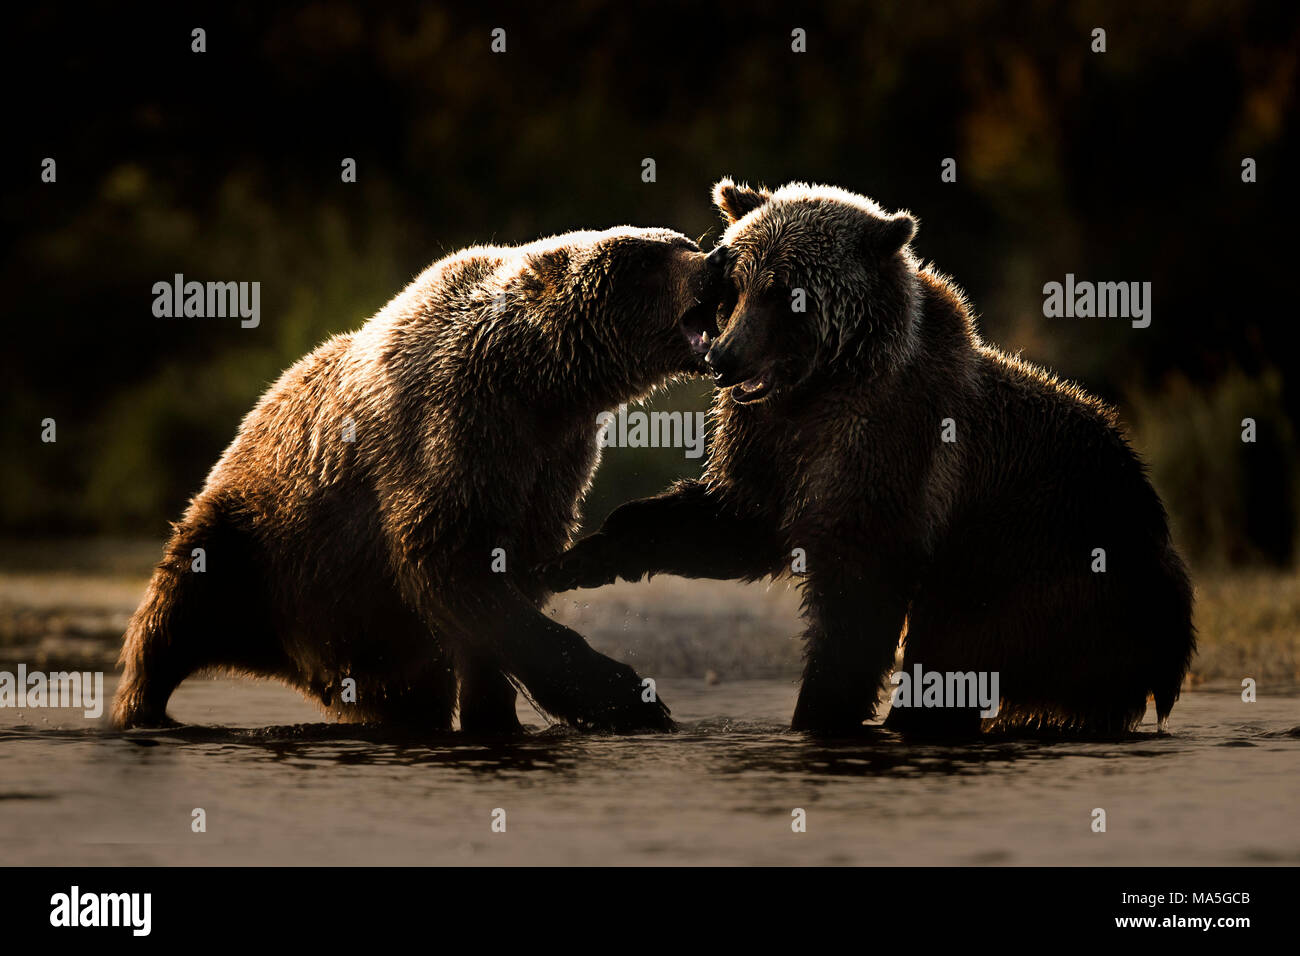 Ours brun (Ursus arctos) alascensis, Brooks River, Katmai National Park et préserver, péninsule de l'Alaska, dans l'ouest de l'Alaska, États-Unis d'Amérique Banque D'Images